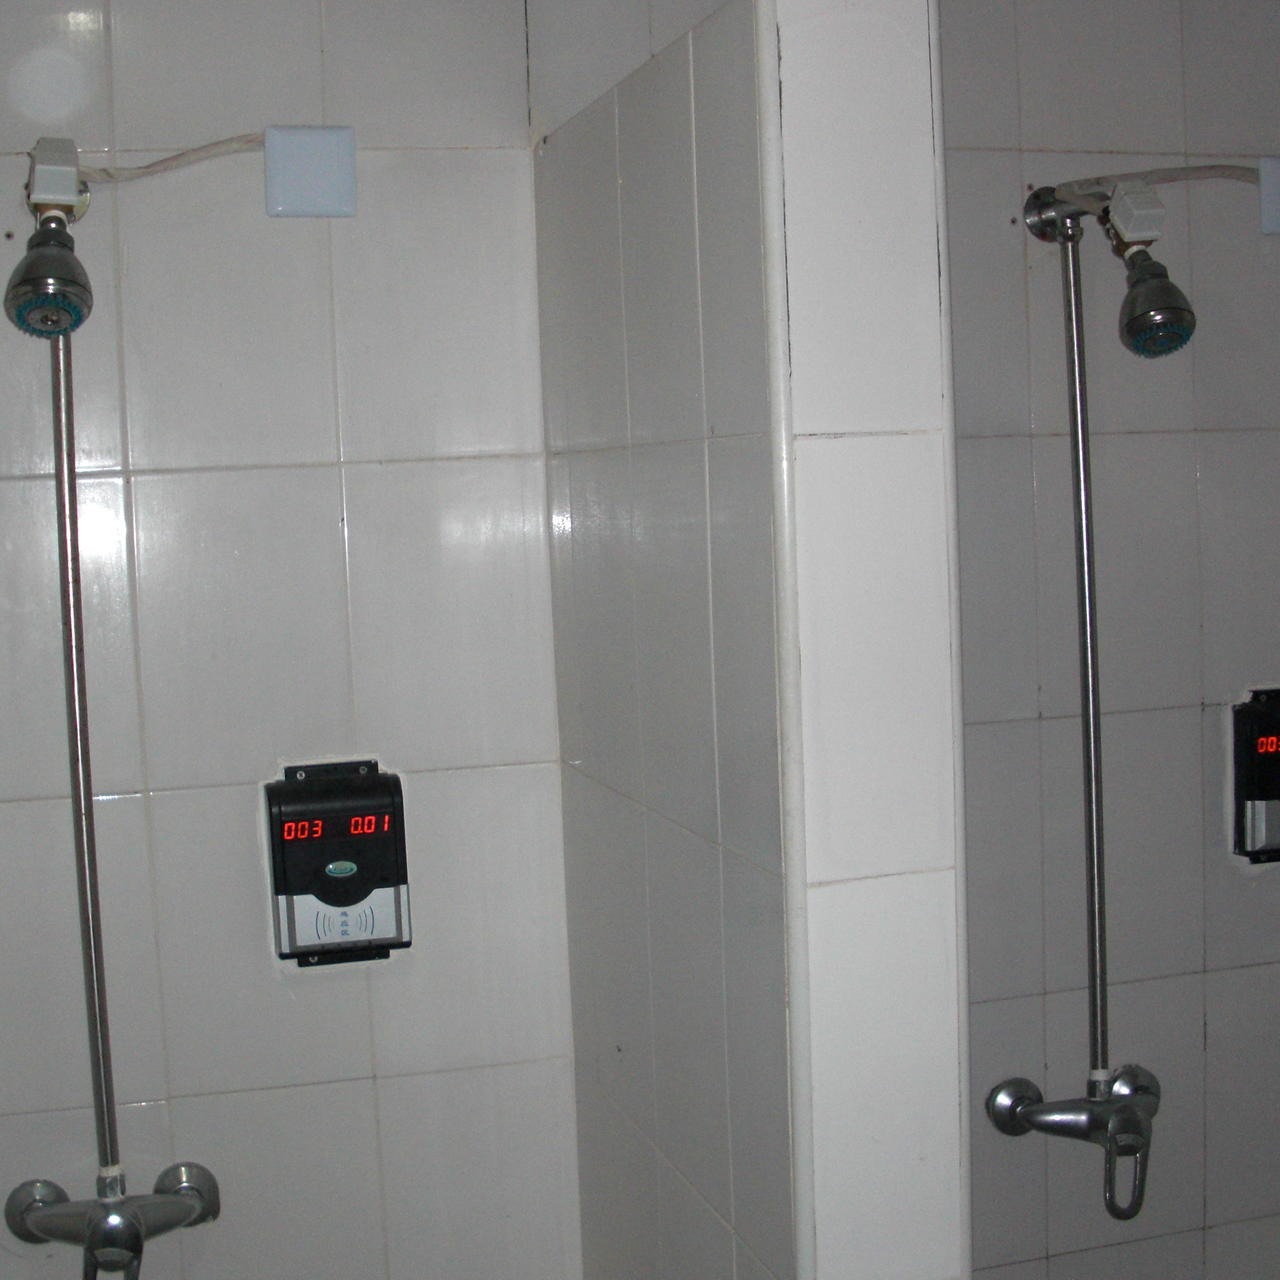 兴天下HF-660IC卡淋浴水控器,浴室淋浴刷卡水控器,淋浴控水机